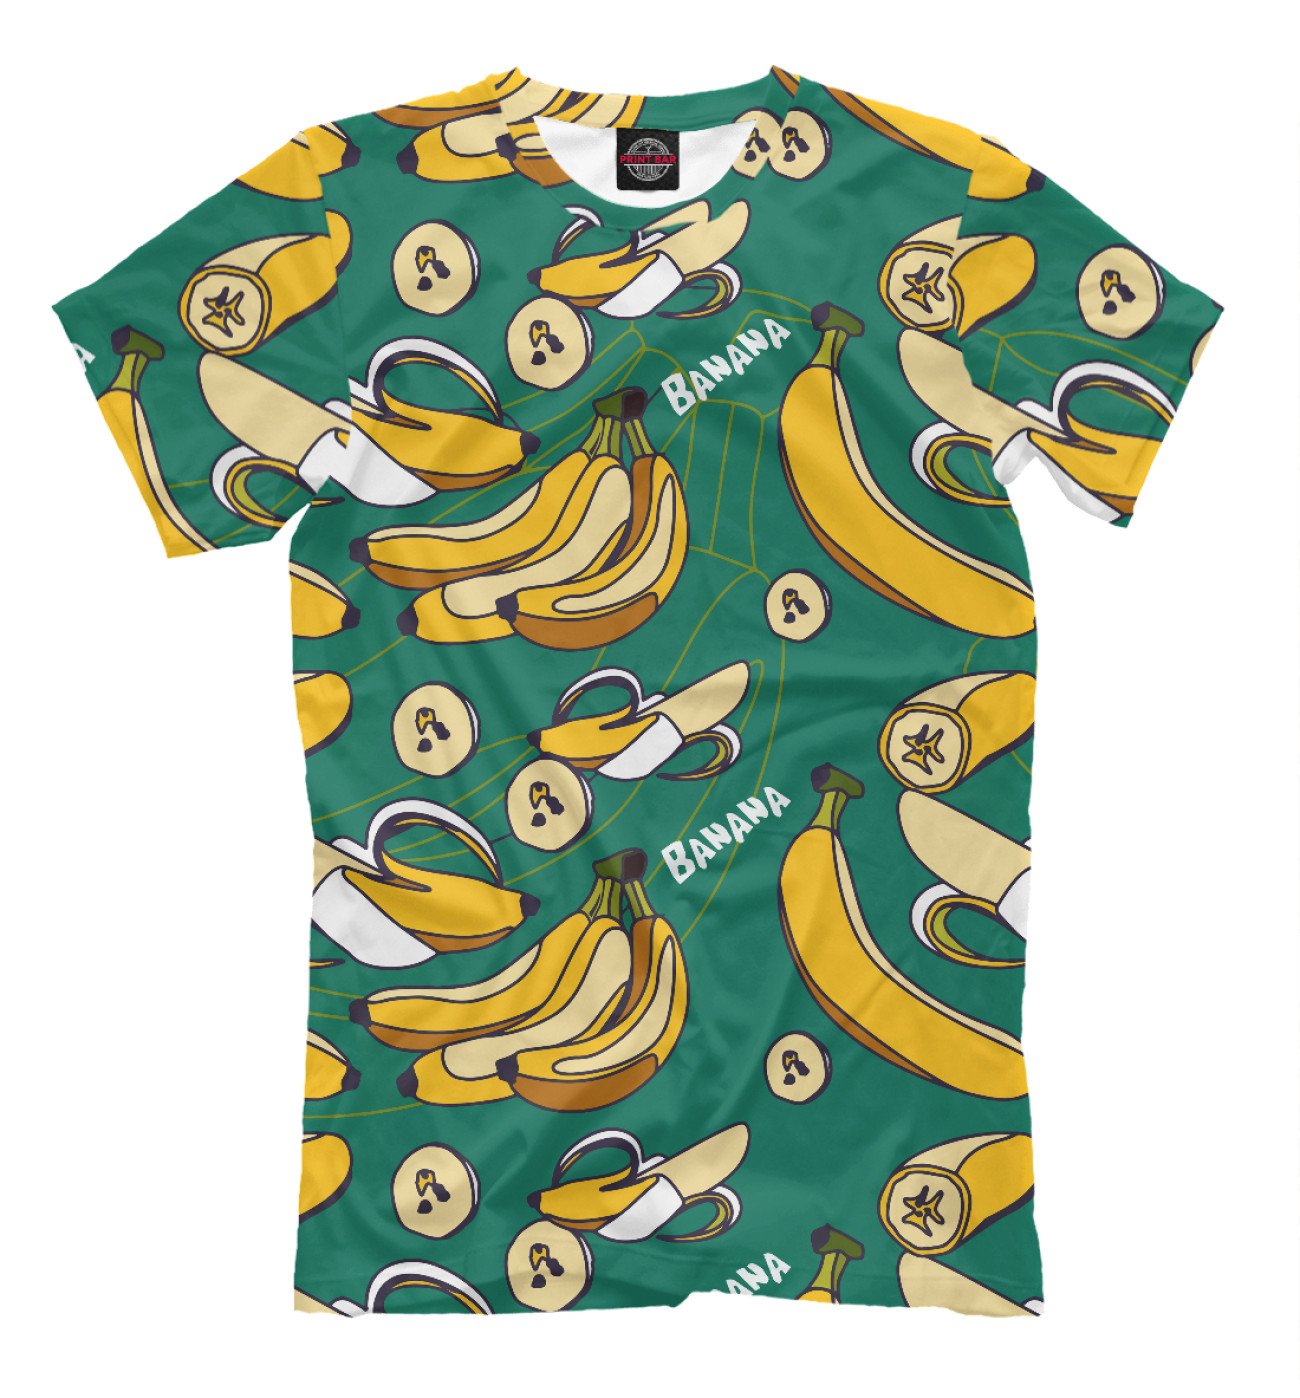 Мужская Футболка Banana pattern, артикул: BAN-387694-fut-2